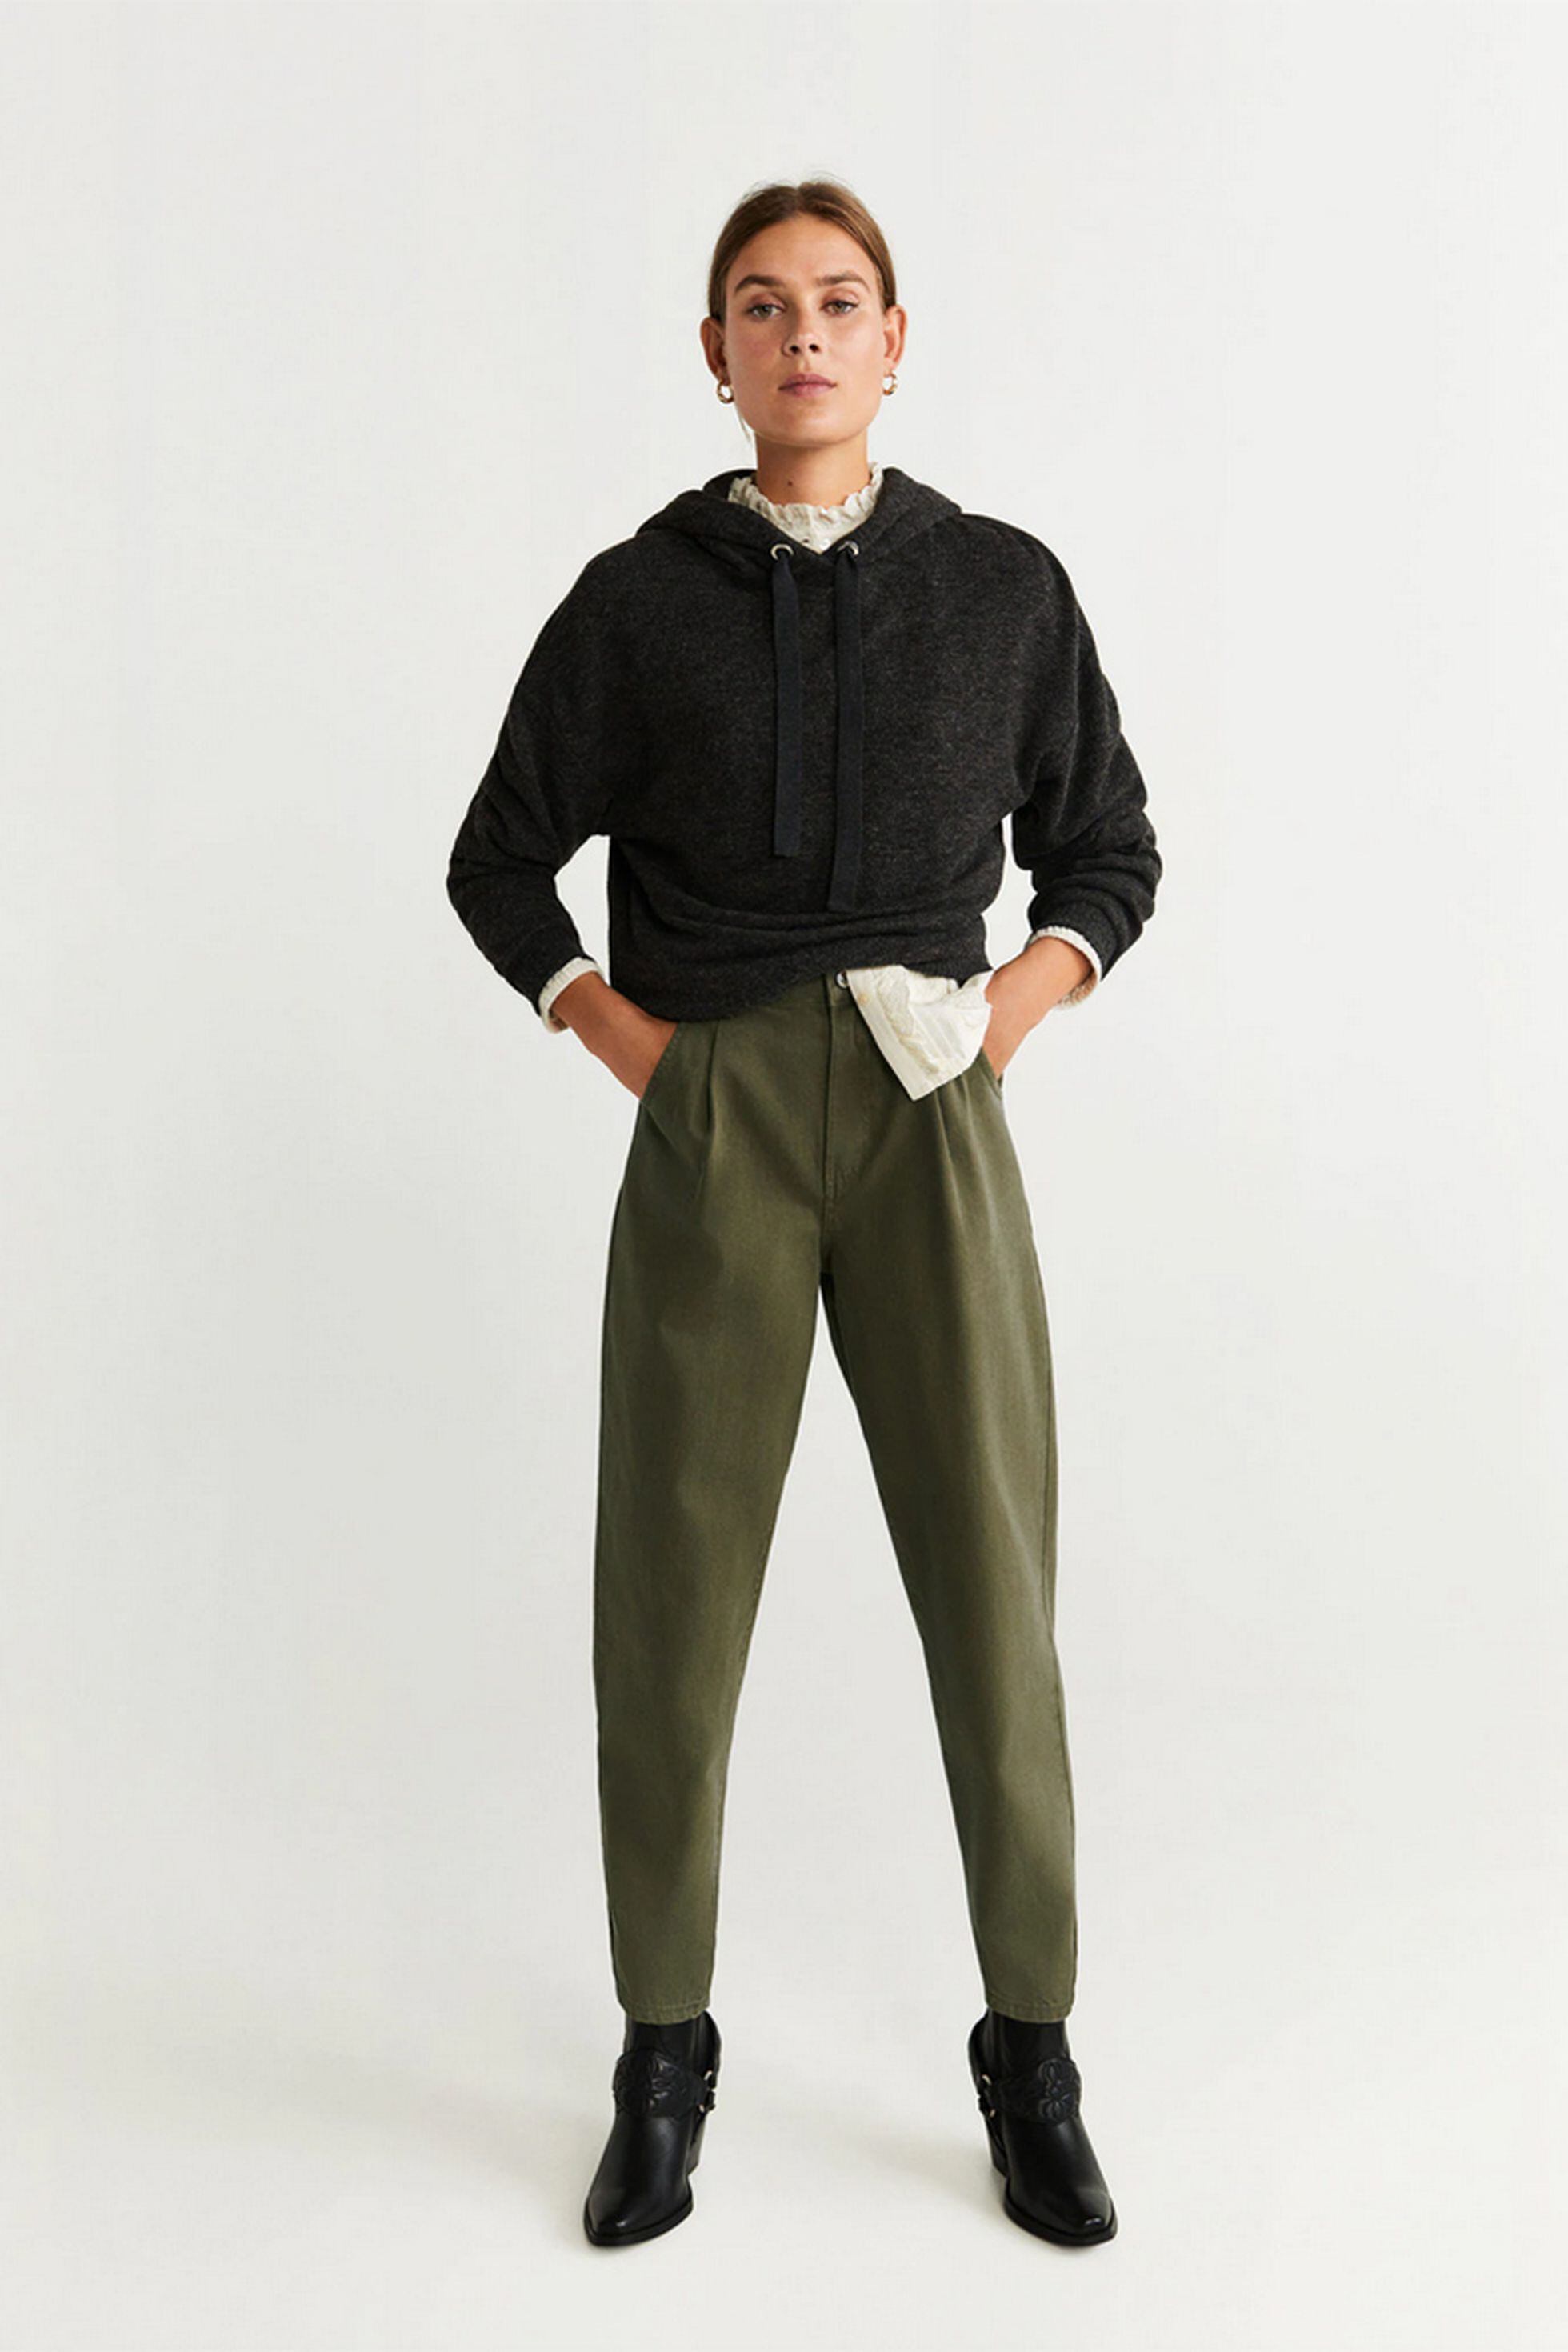 Así se lleva el nuevo pantalón bombacho: alto, ancho y de corte 'slouchy